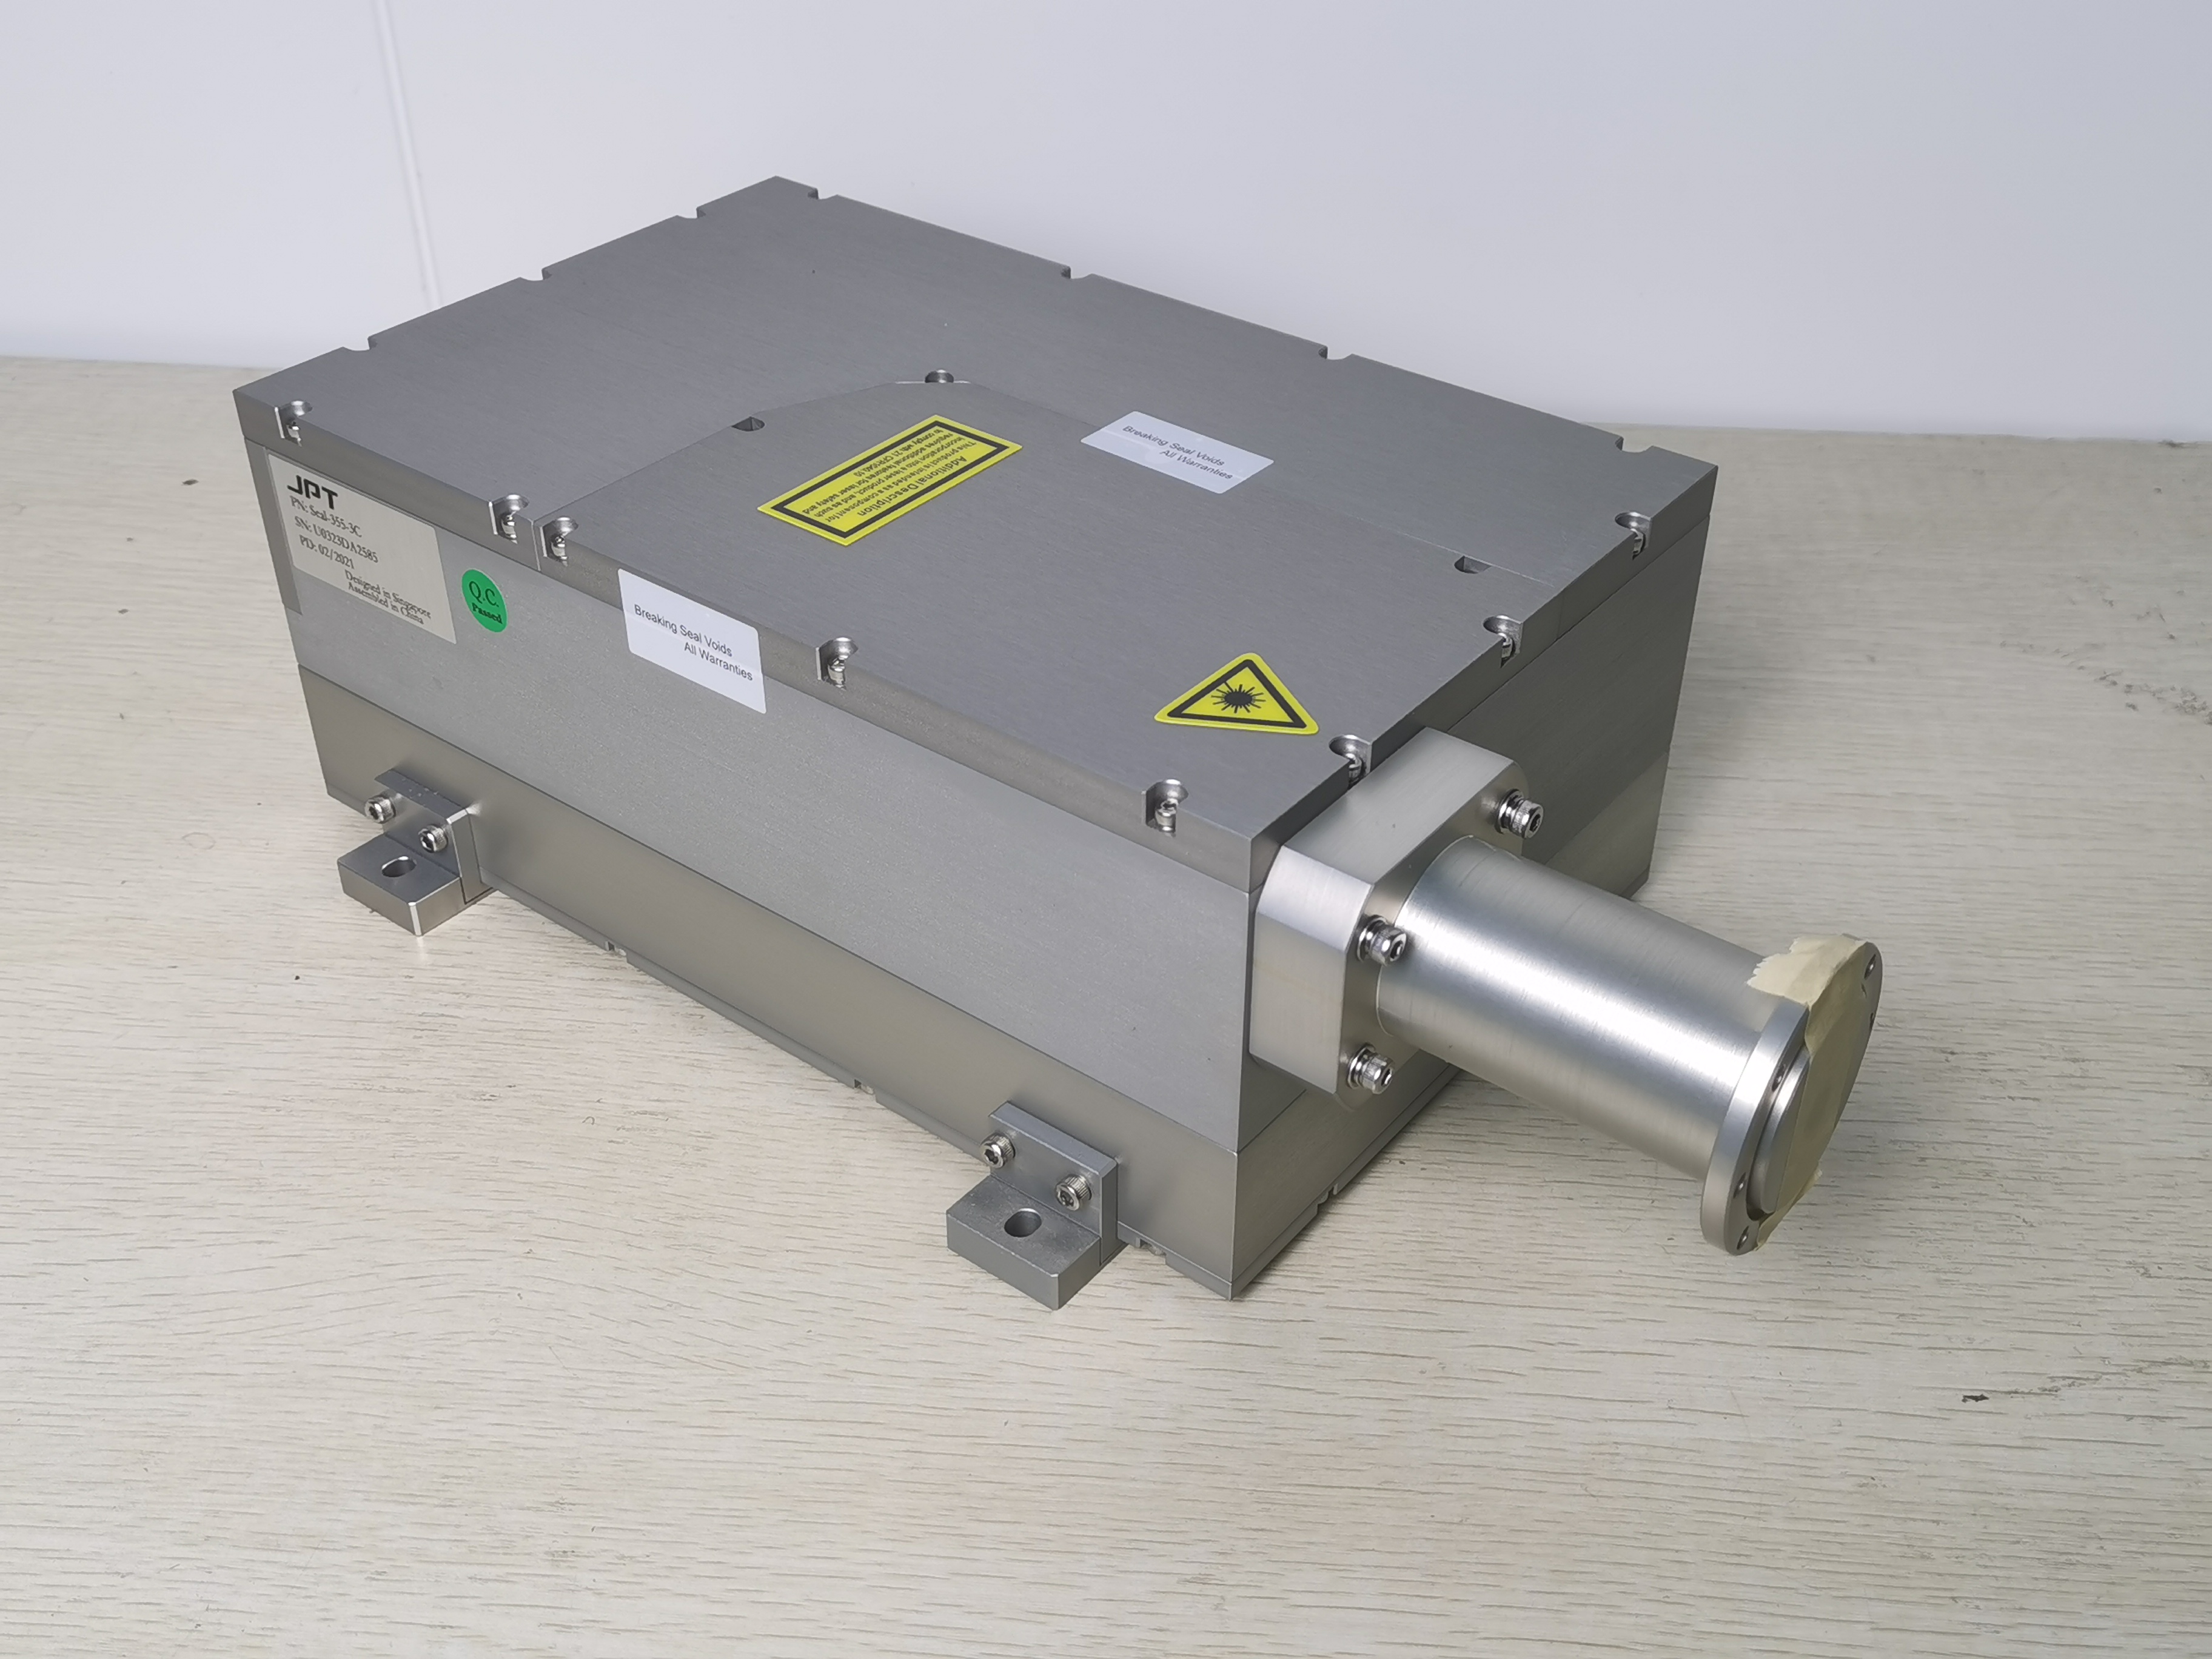 Portable Split Style 355nm Wavelength 3W 5w 10w UV Laser Marking Machine 